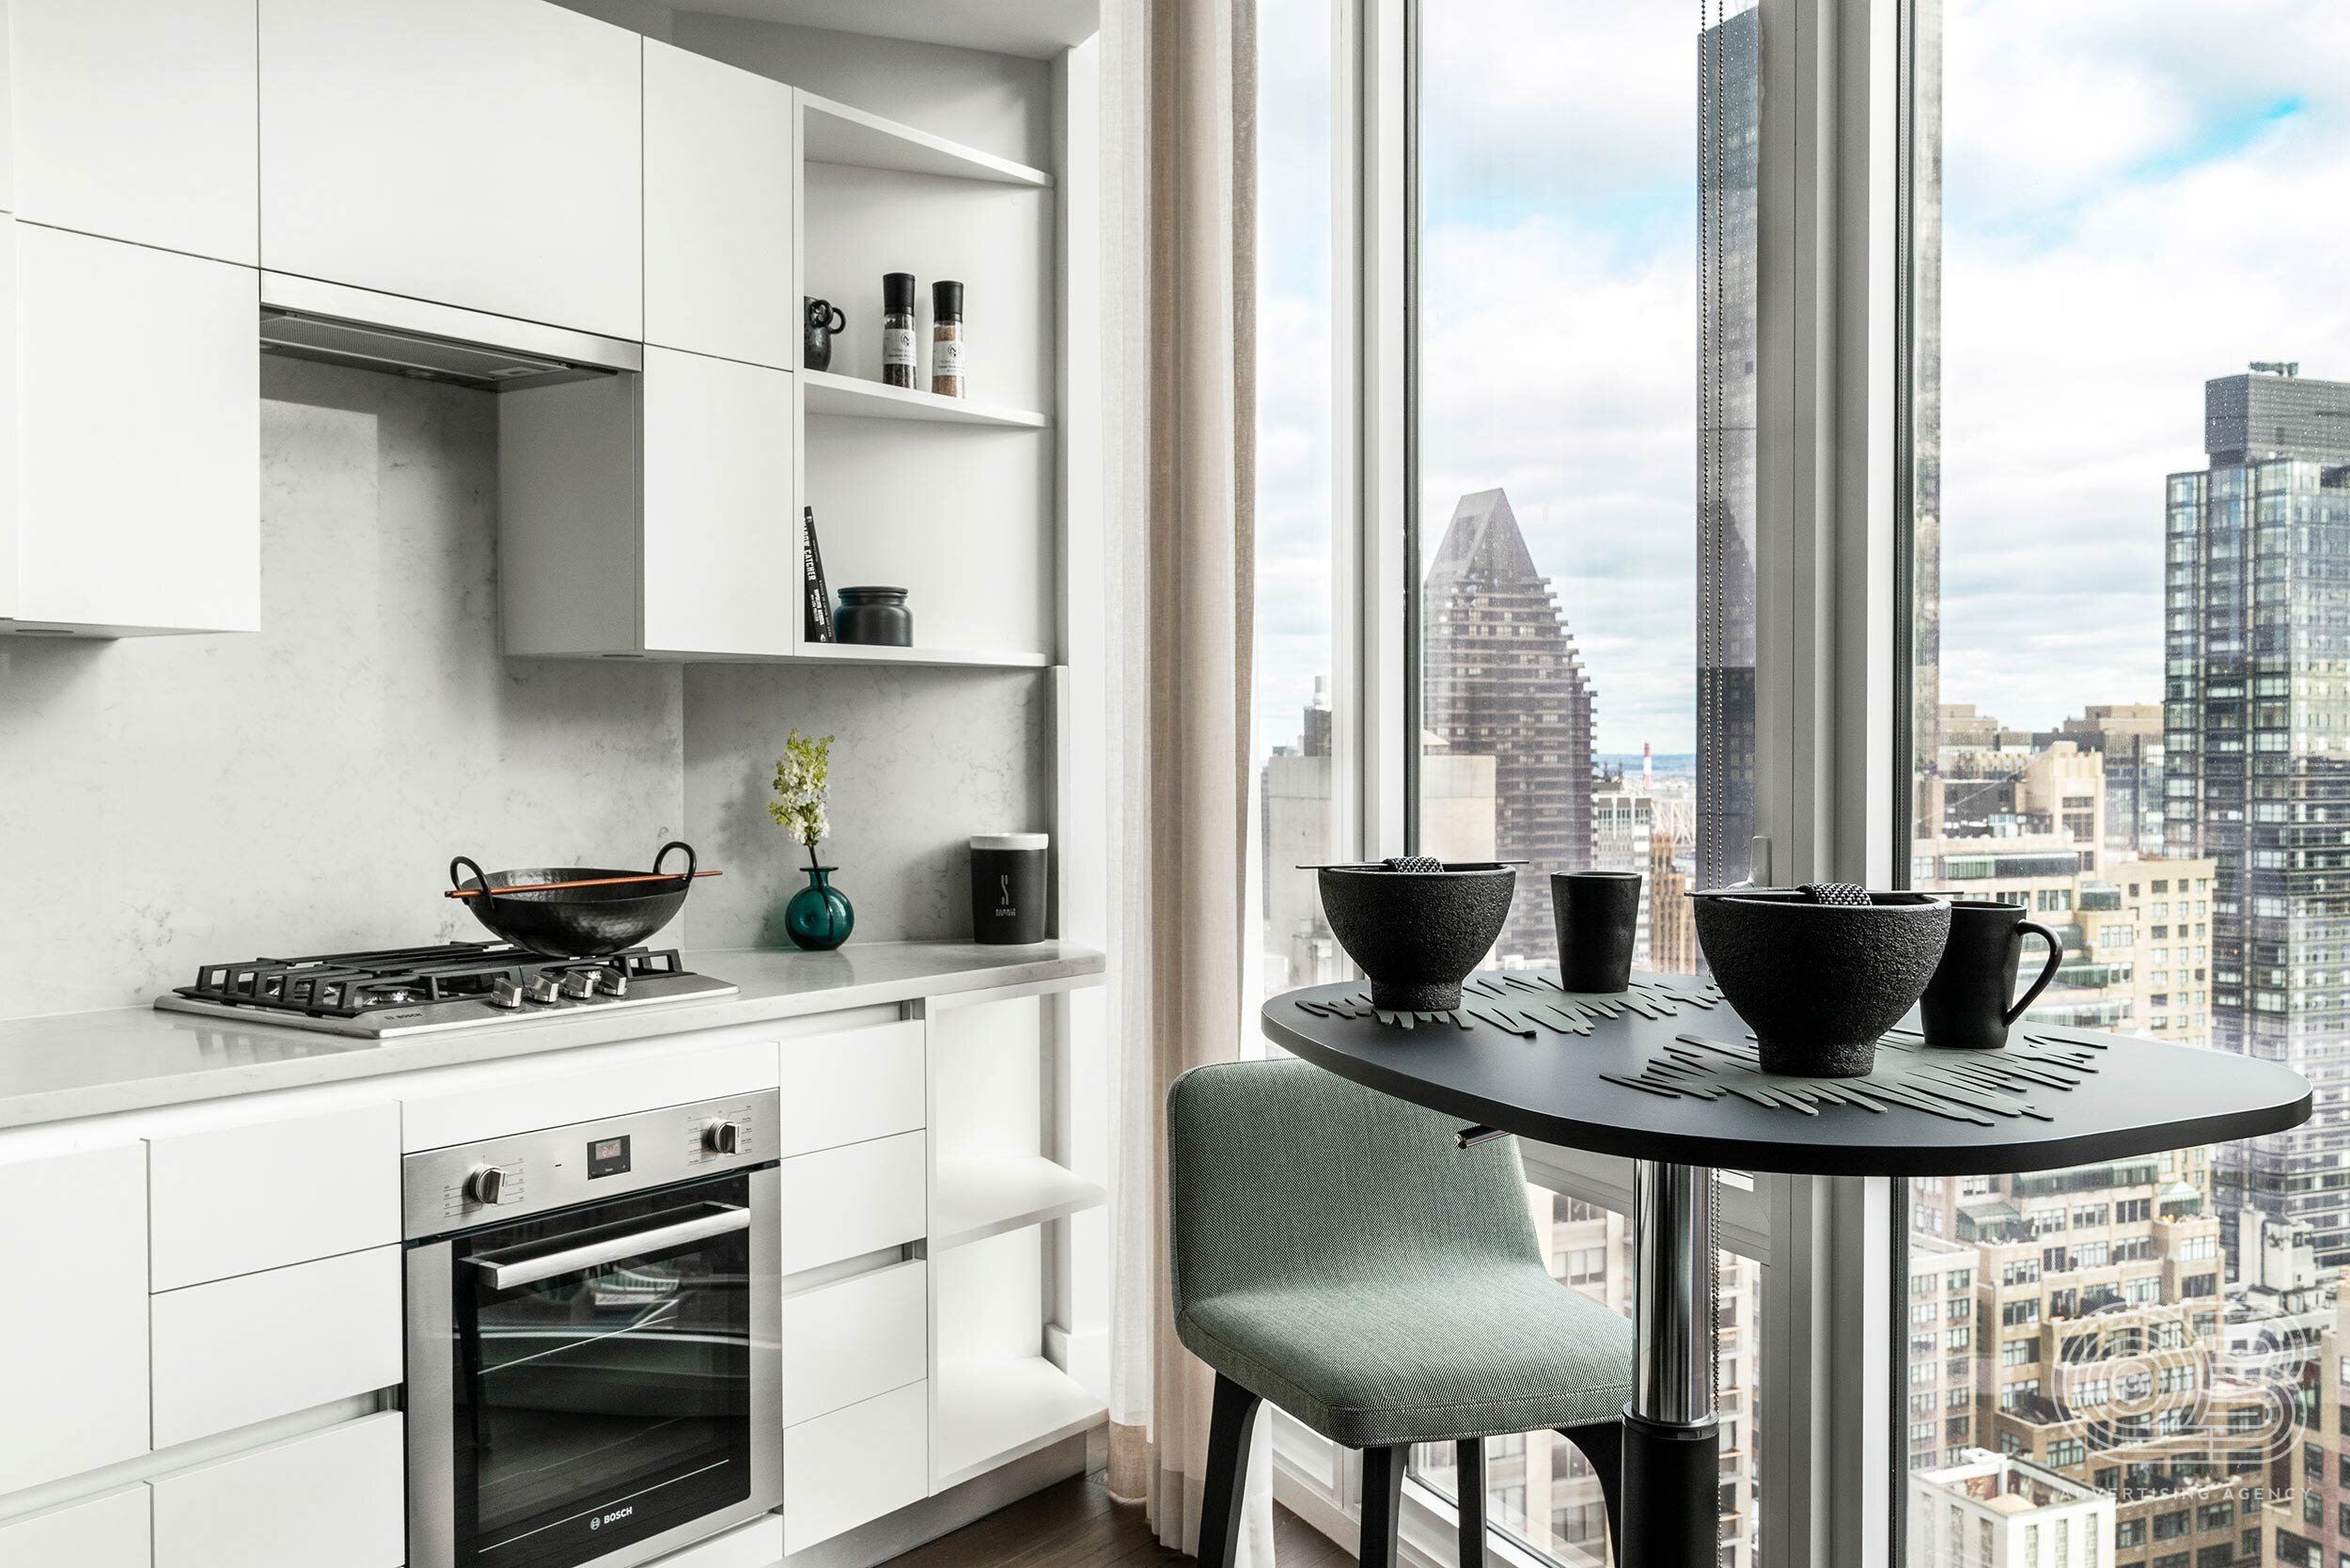 interior-vignette-kitchen-city-views.jpg